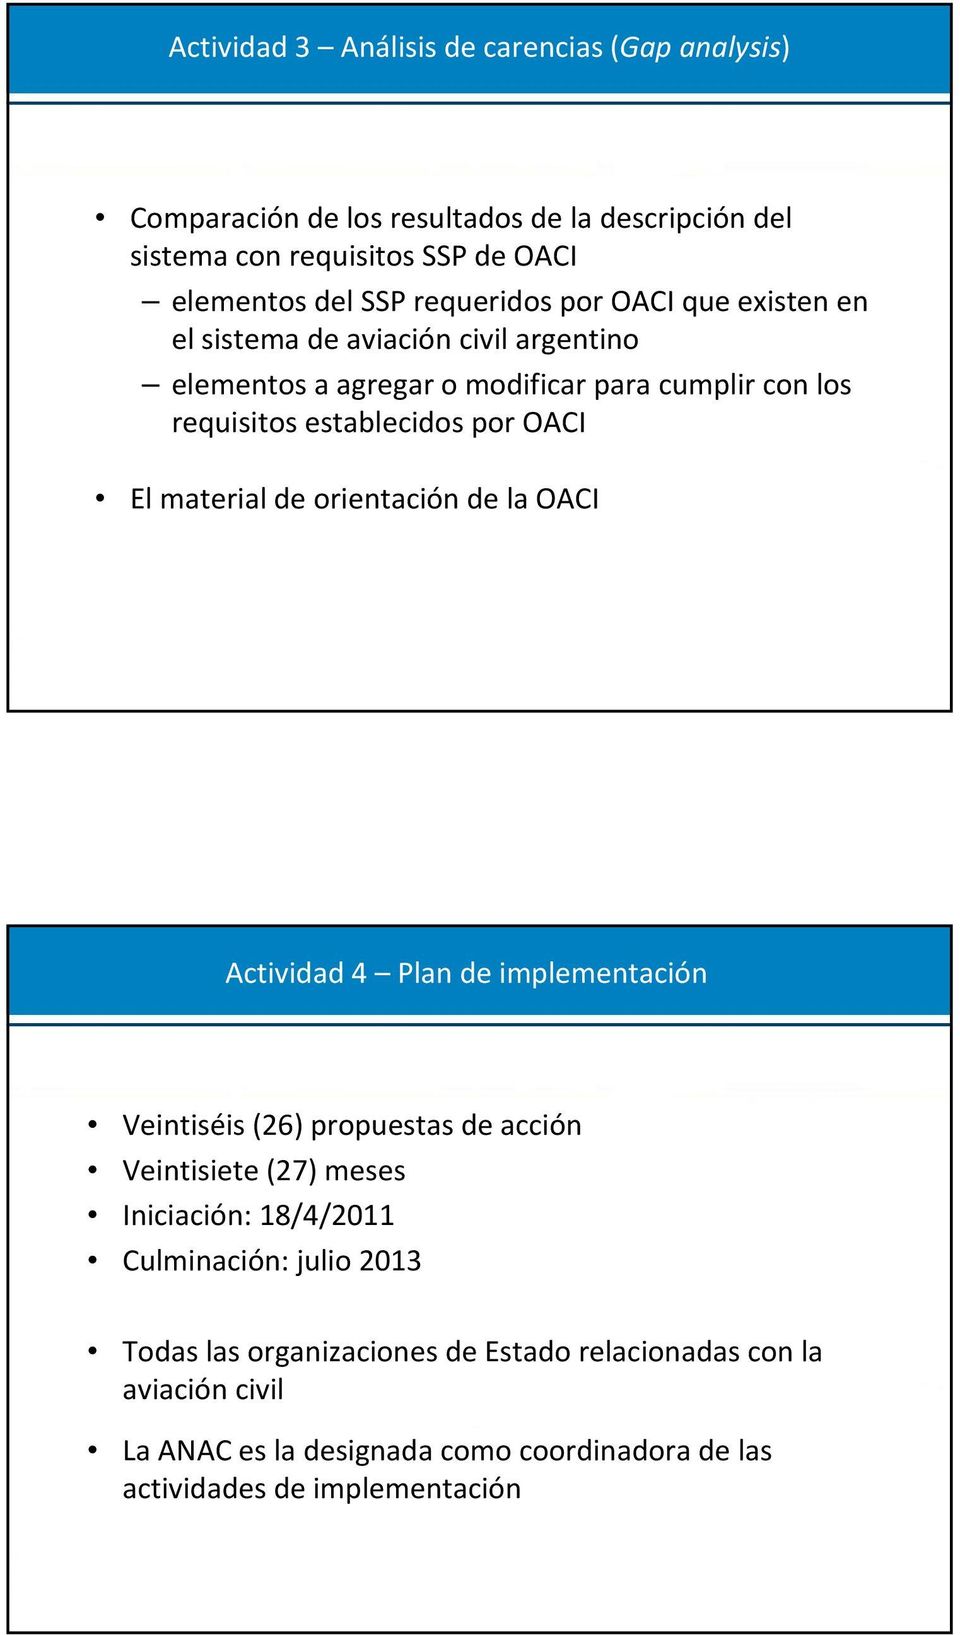 El material de orientación de la OACI Actividad 4 Plan de implementación Veintiséis (26) propuestas de acción Veintisiete (27) meses Iniciación: 18/4/2011